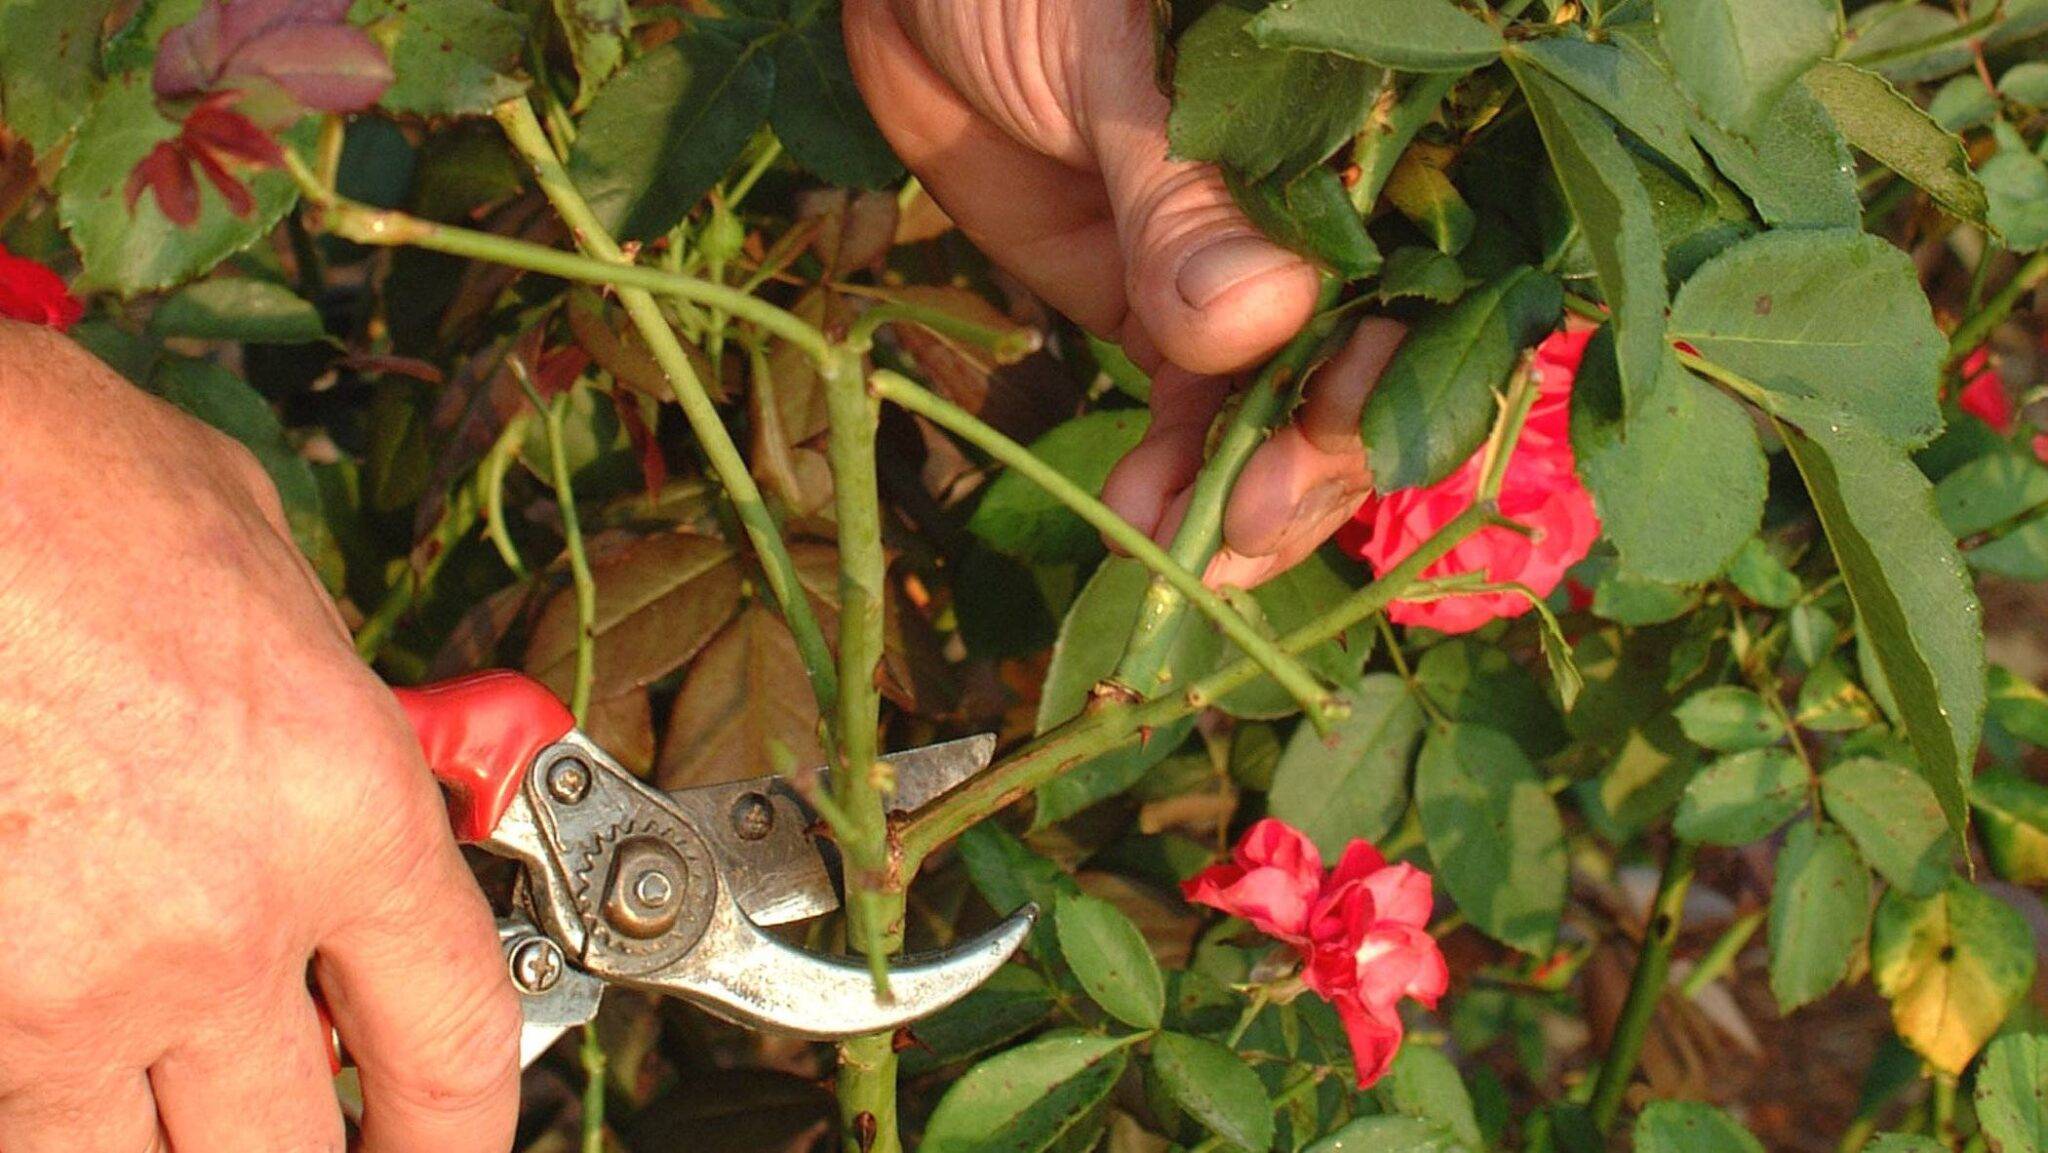 Как вырастить кустовую розу в горшке? описание цветка и правила ухода за ним в домашних условиях